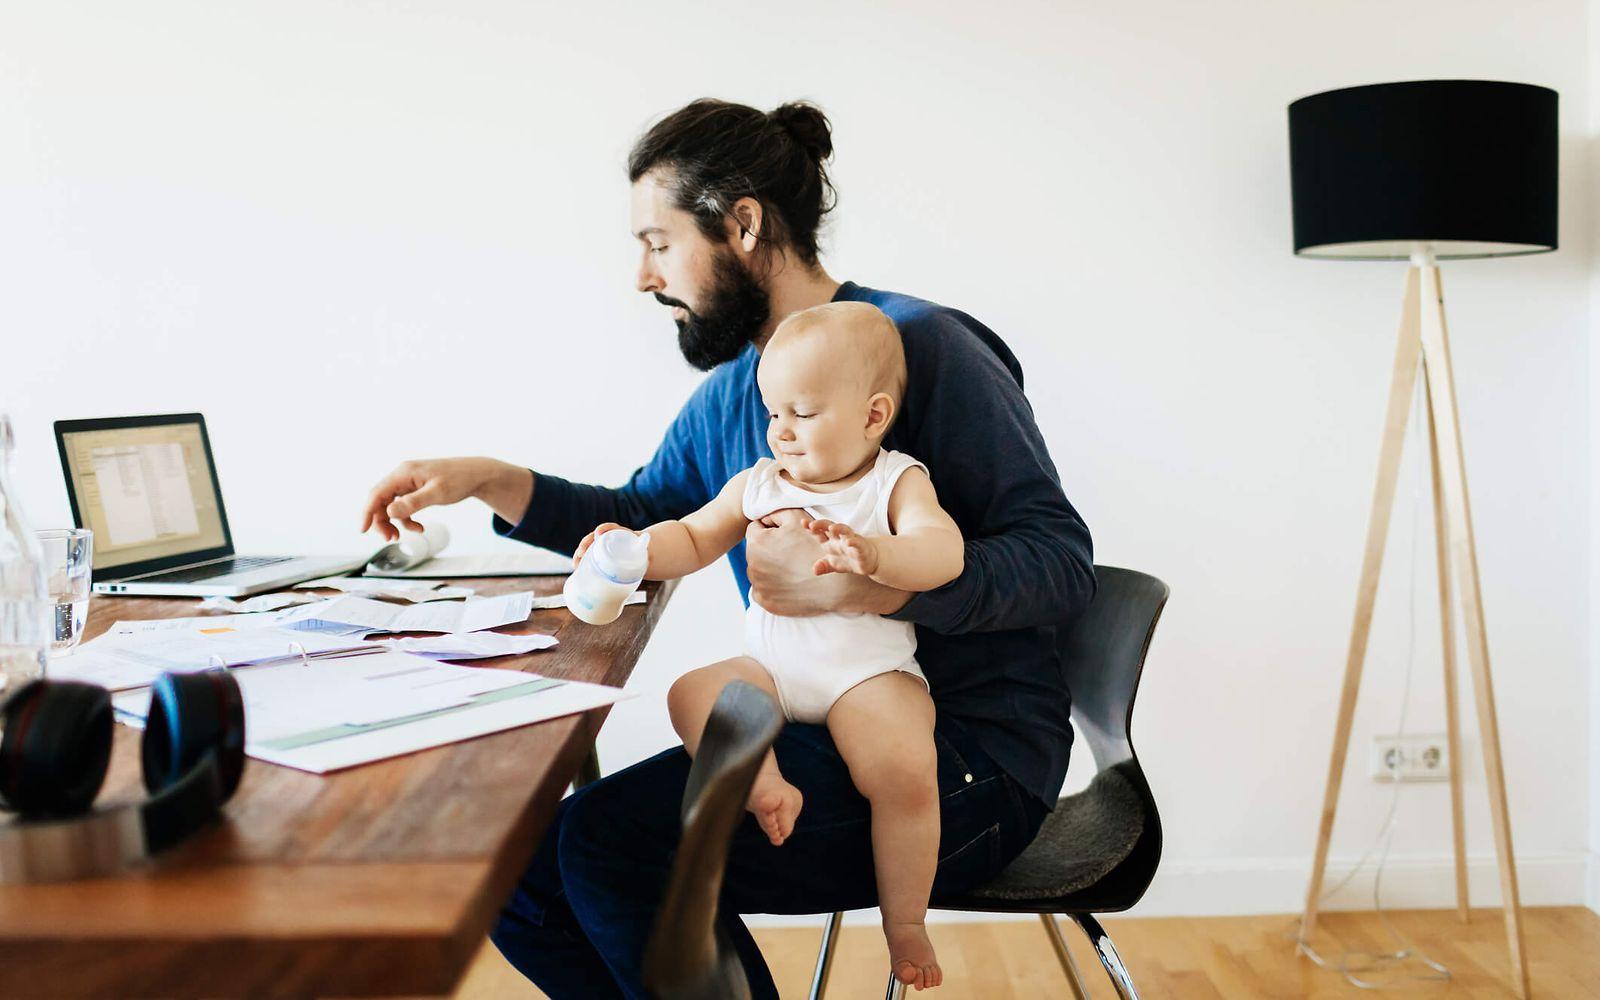 Bild: Vater sitzt am Schreibtisch und hat ein Kleinkind auf dem Schoß.